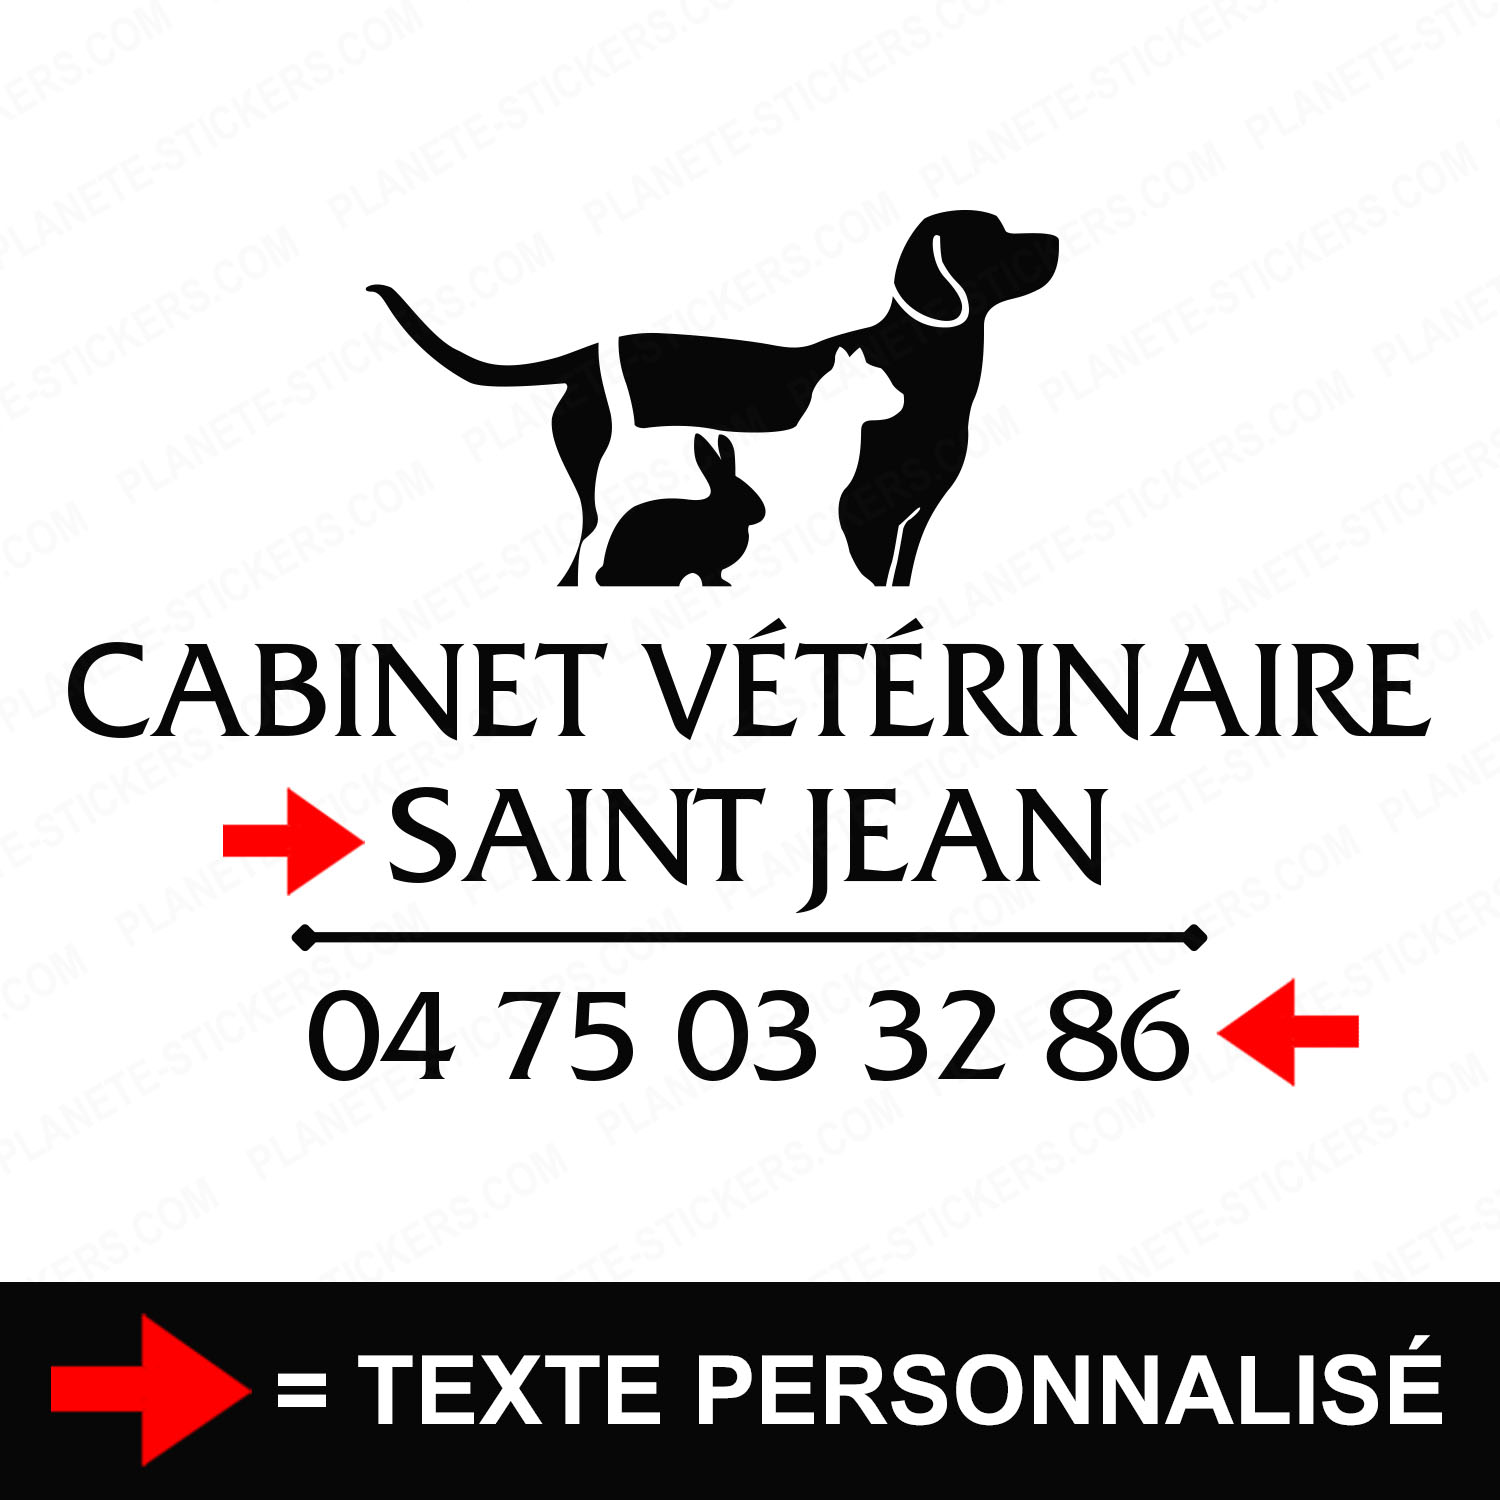 ref18veterinairevitrine-stickers-cabinet-vétérinaire-vitrine-sticker-personnalisé-autocollant-pro-veterinaire-professionnel-2